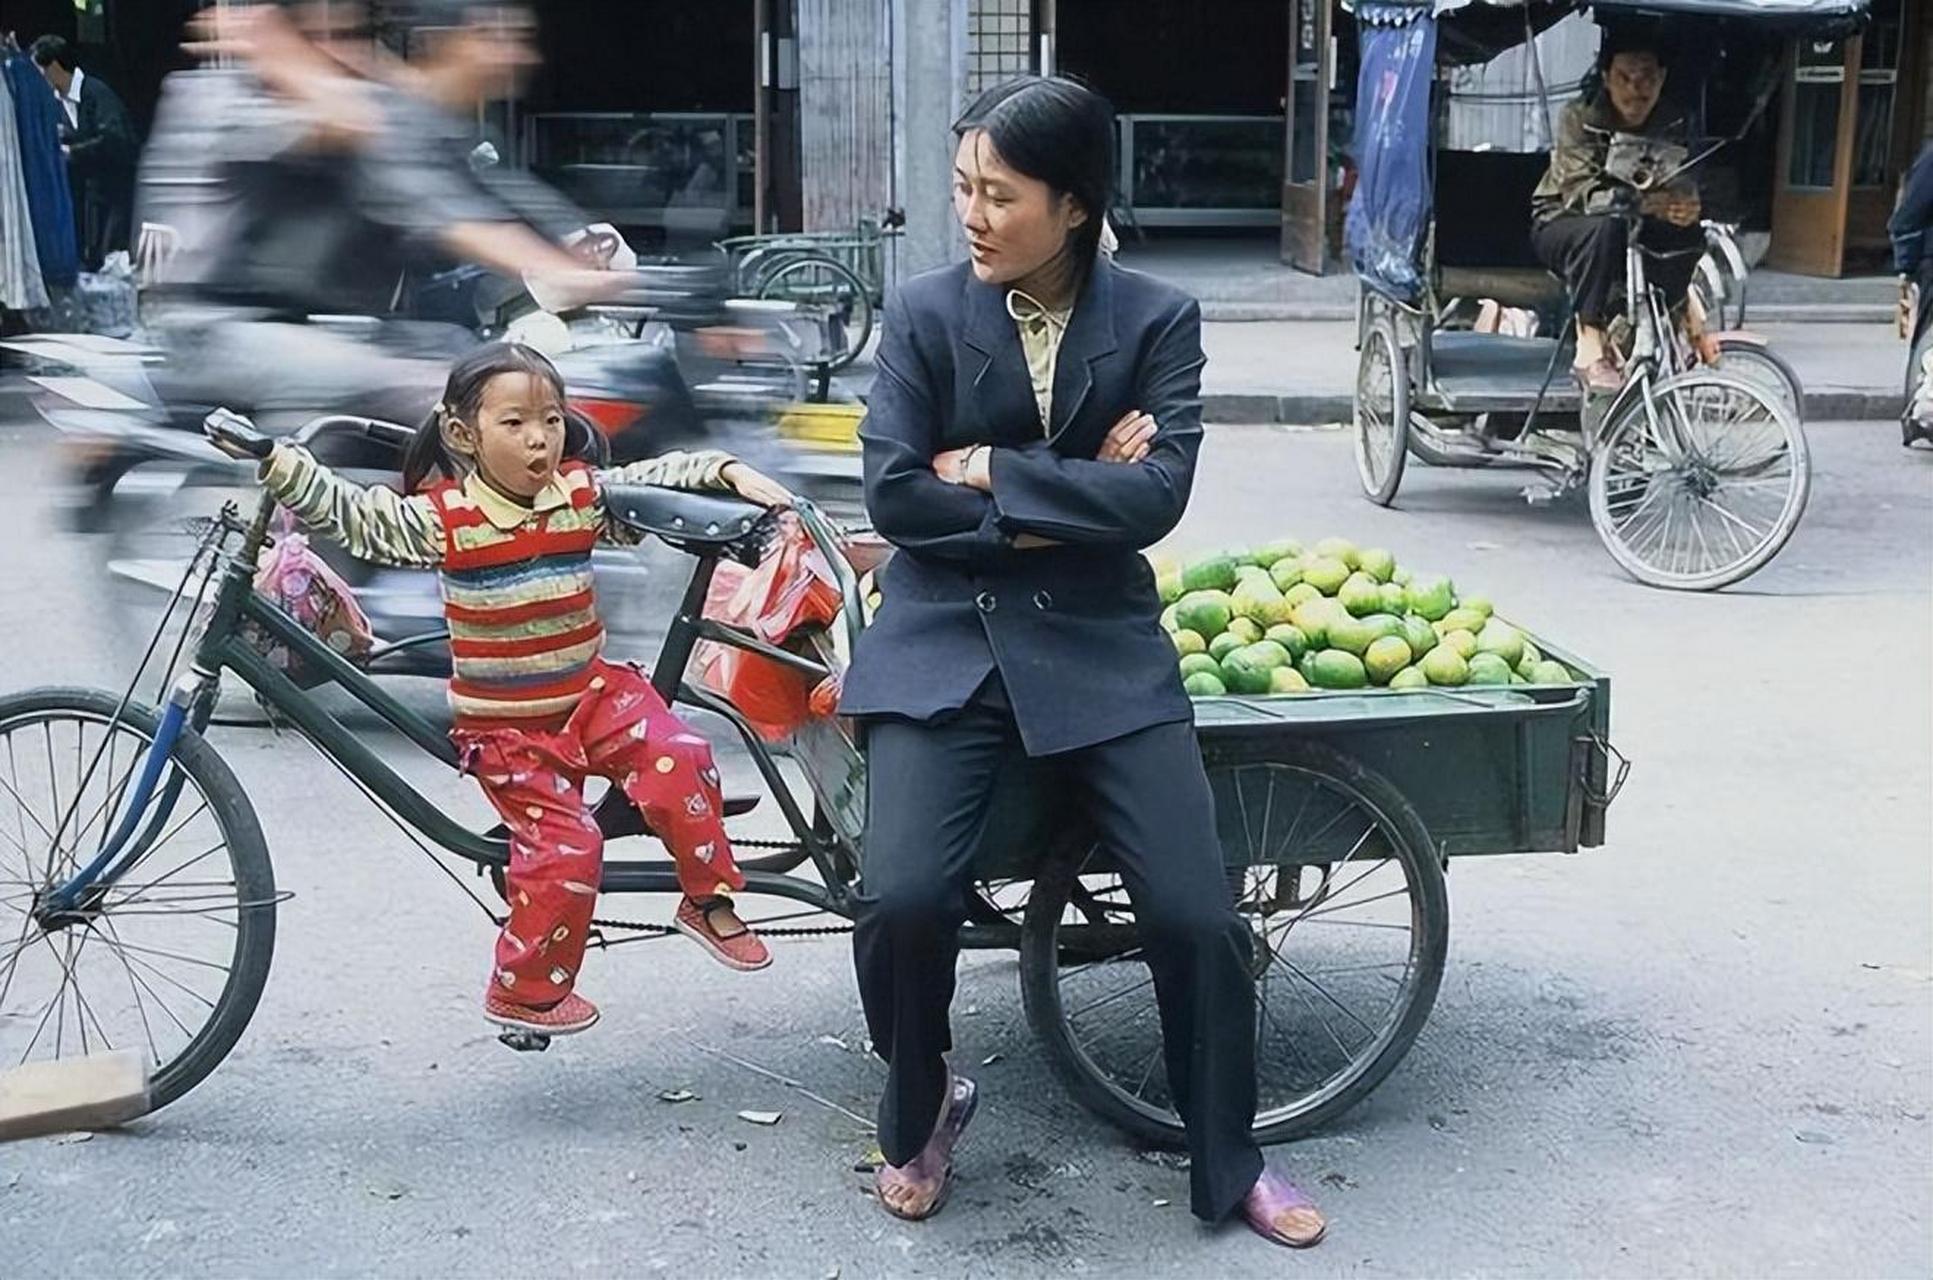 杭州上世纪90年代的一些老照片,可以看到一辆脚踏三轮车载着乘客经过